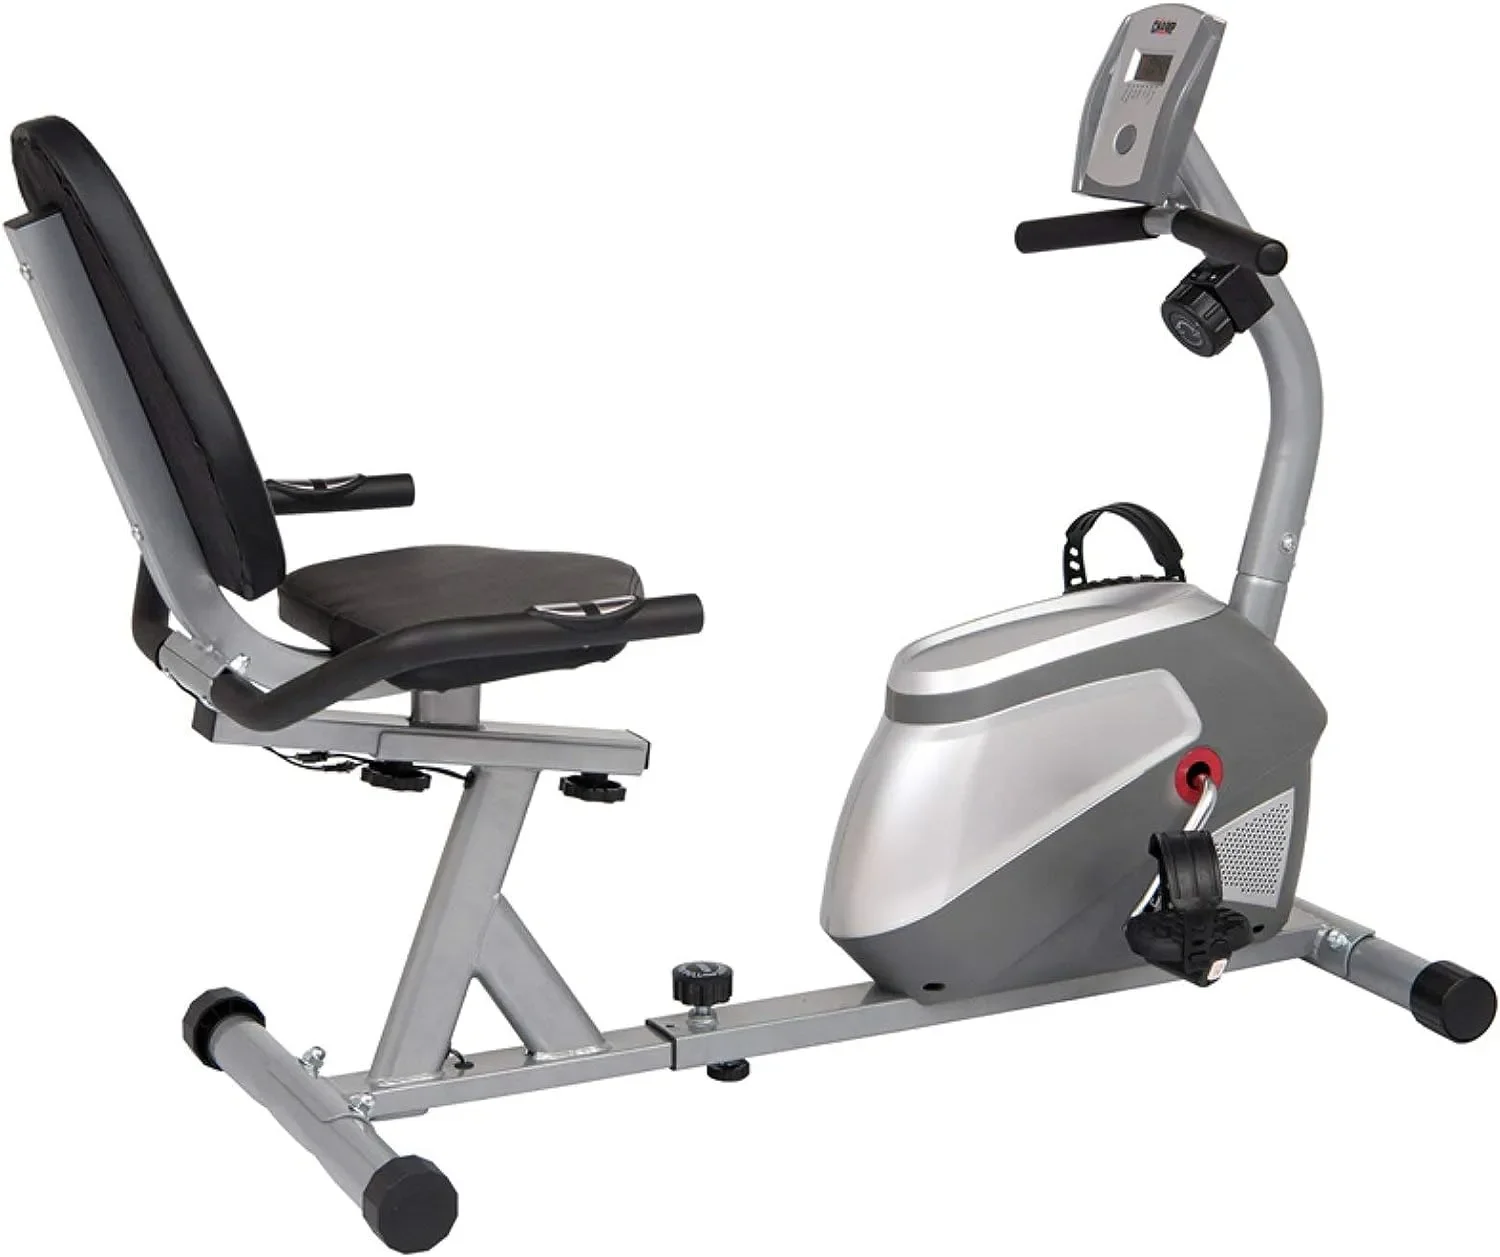 

Велотренажер для дома, велотренажер для низких упражнений для кардио-фитнеса, оборудование для домашнего тренажерного зала BRB852, черный/серебристый, один размер